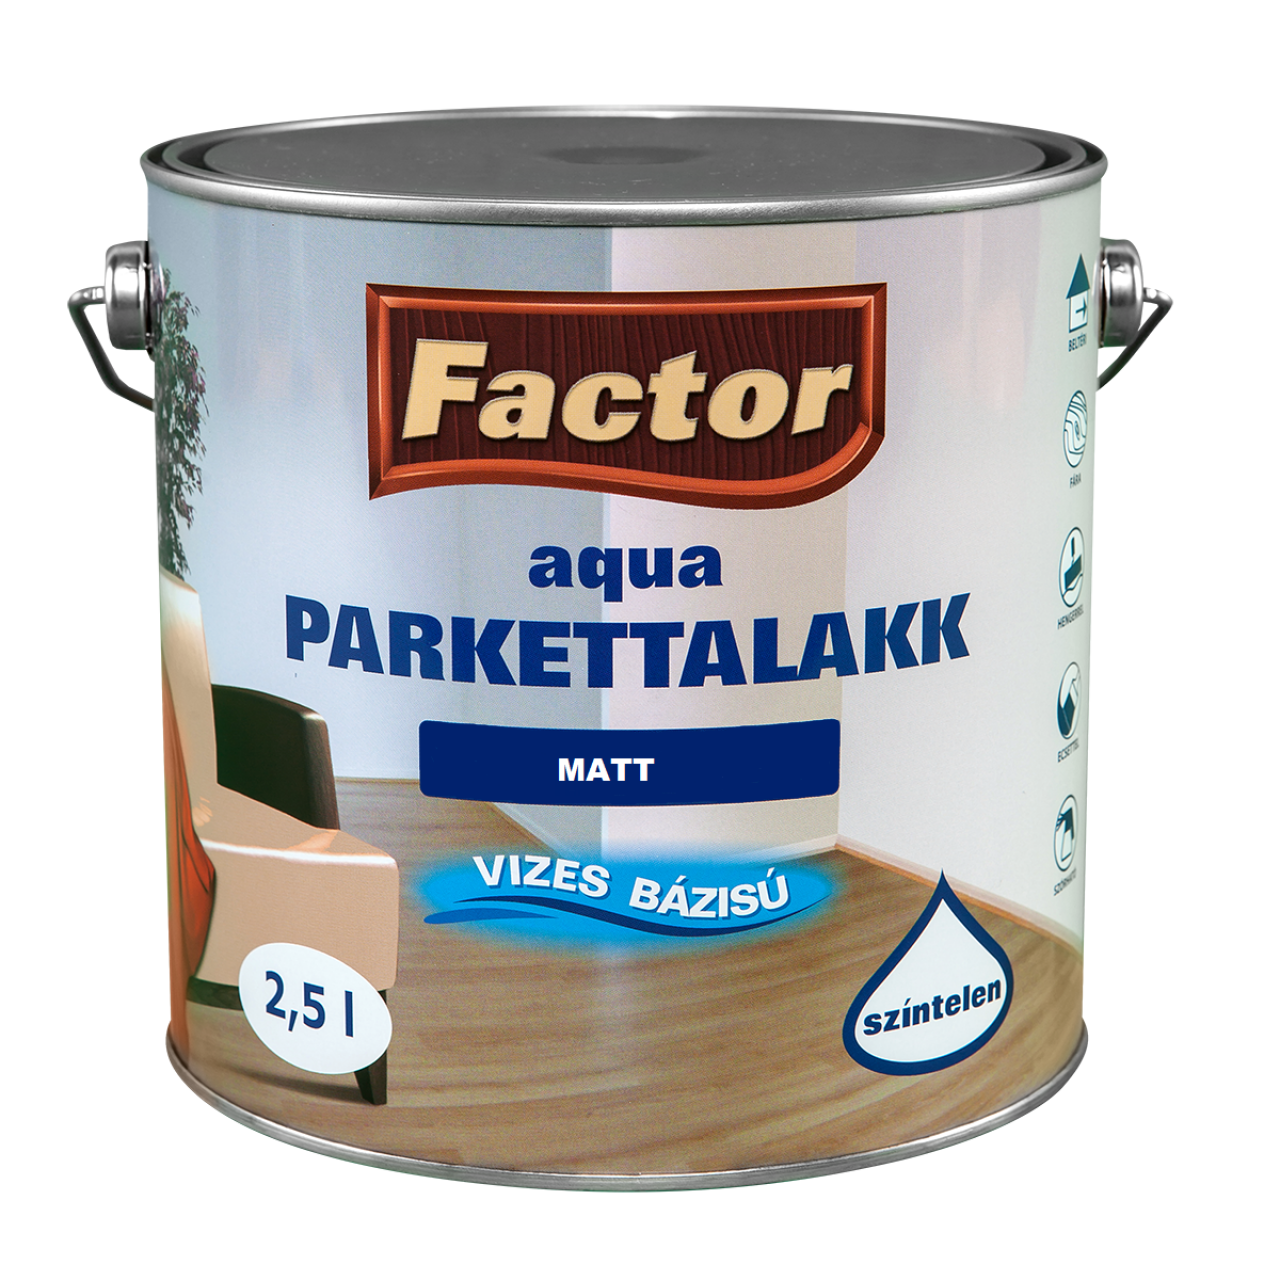 Factor Aqua Parkettalakk matt  2,5L (115772)